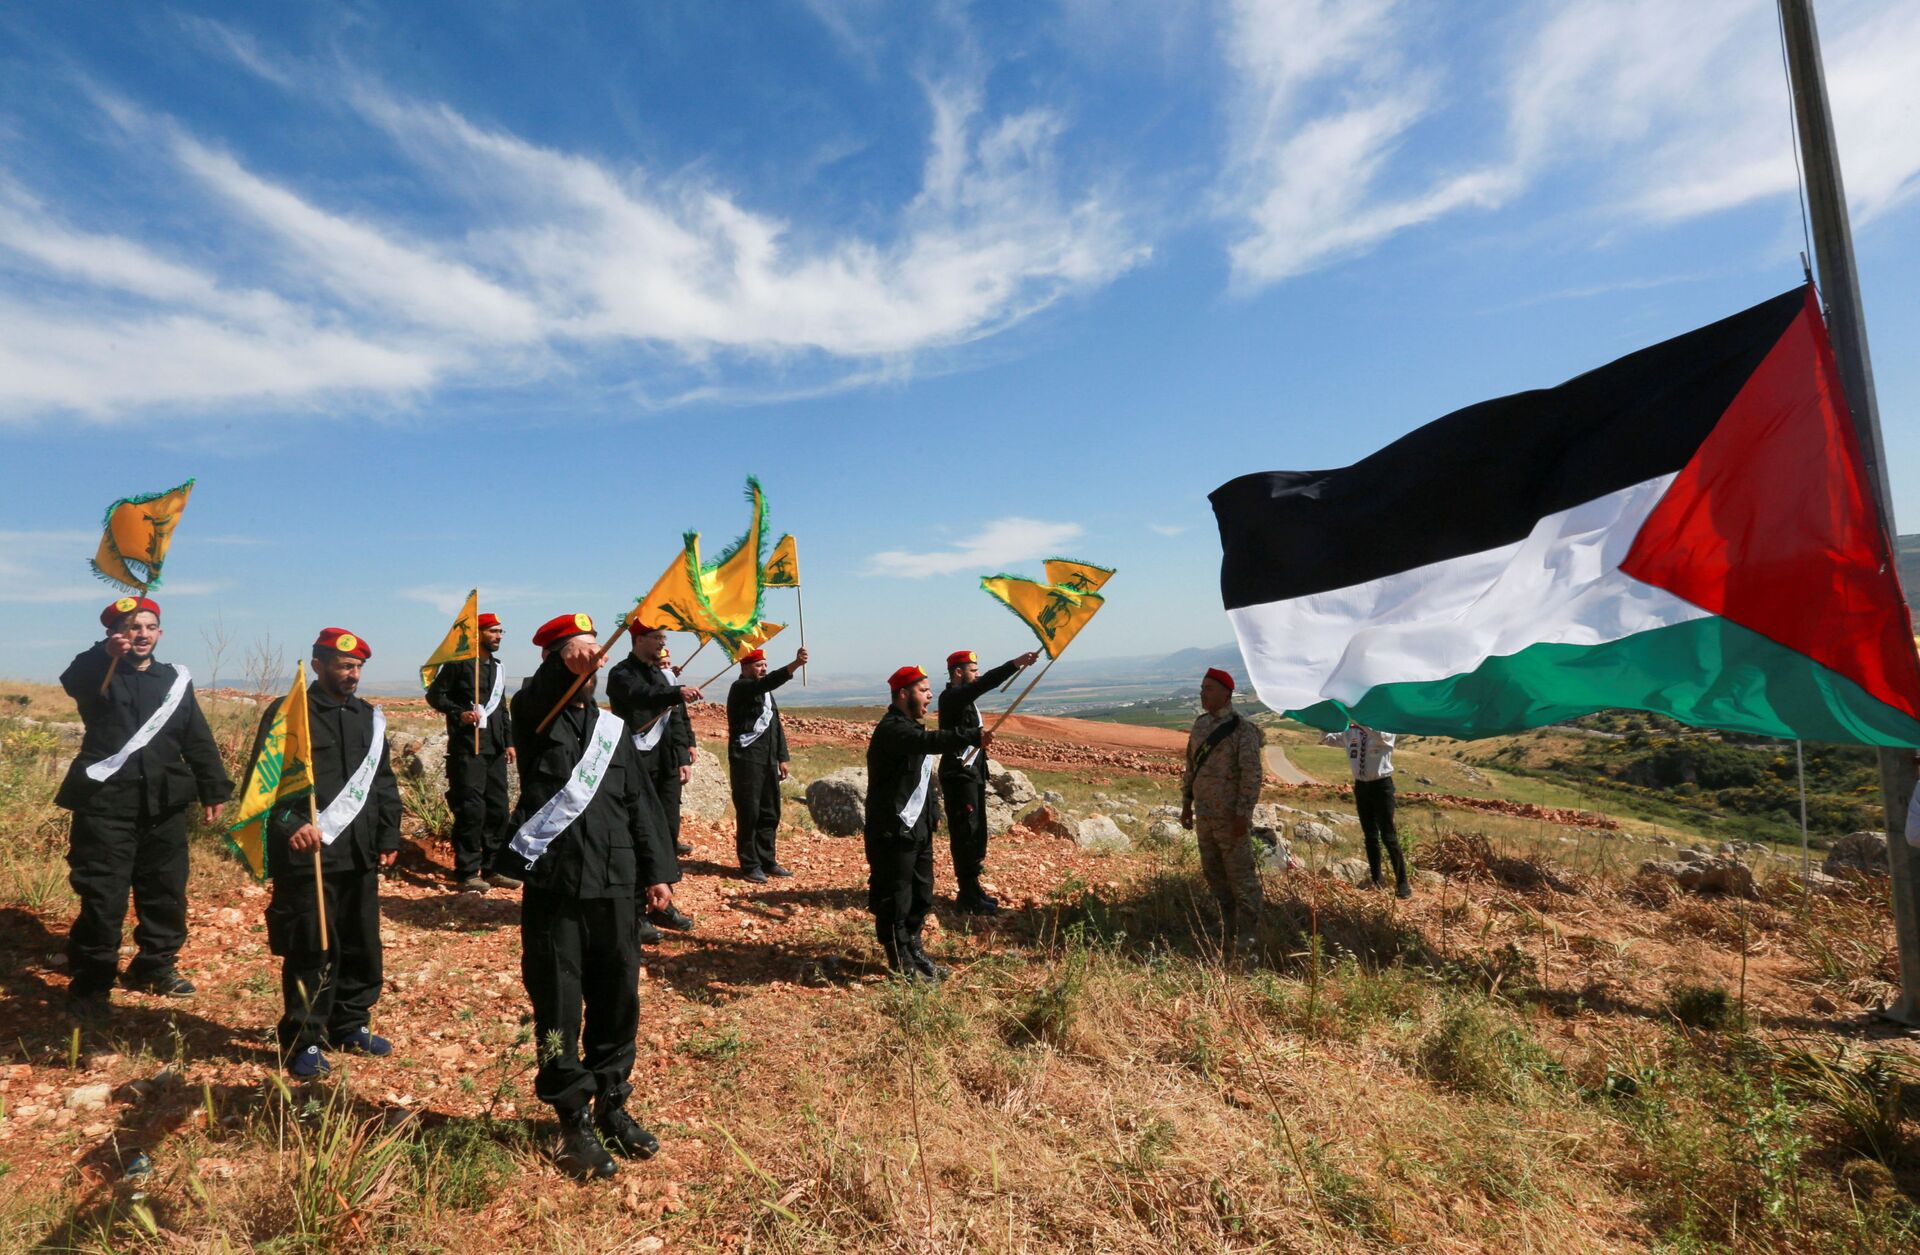 Guerra à vista? Tensões entre Israel e Hezbollah são apenas 'troca de mensagens', diz especialista - Sputnik Brasil, 1920, 07.08.2021